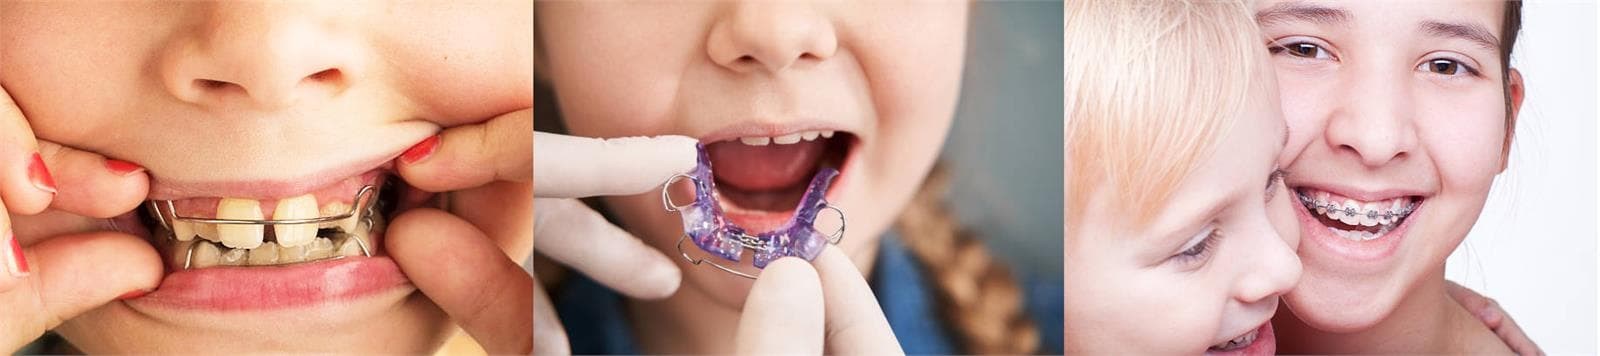 Importancia de la detección temprana de los problemas de ortodoncia en los niños. - Imagen 3